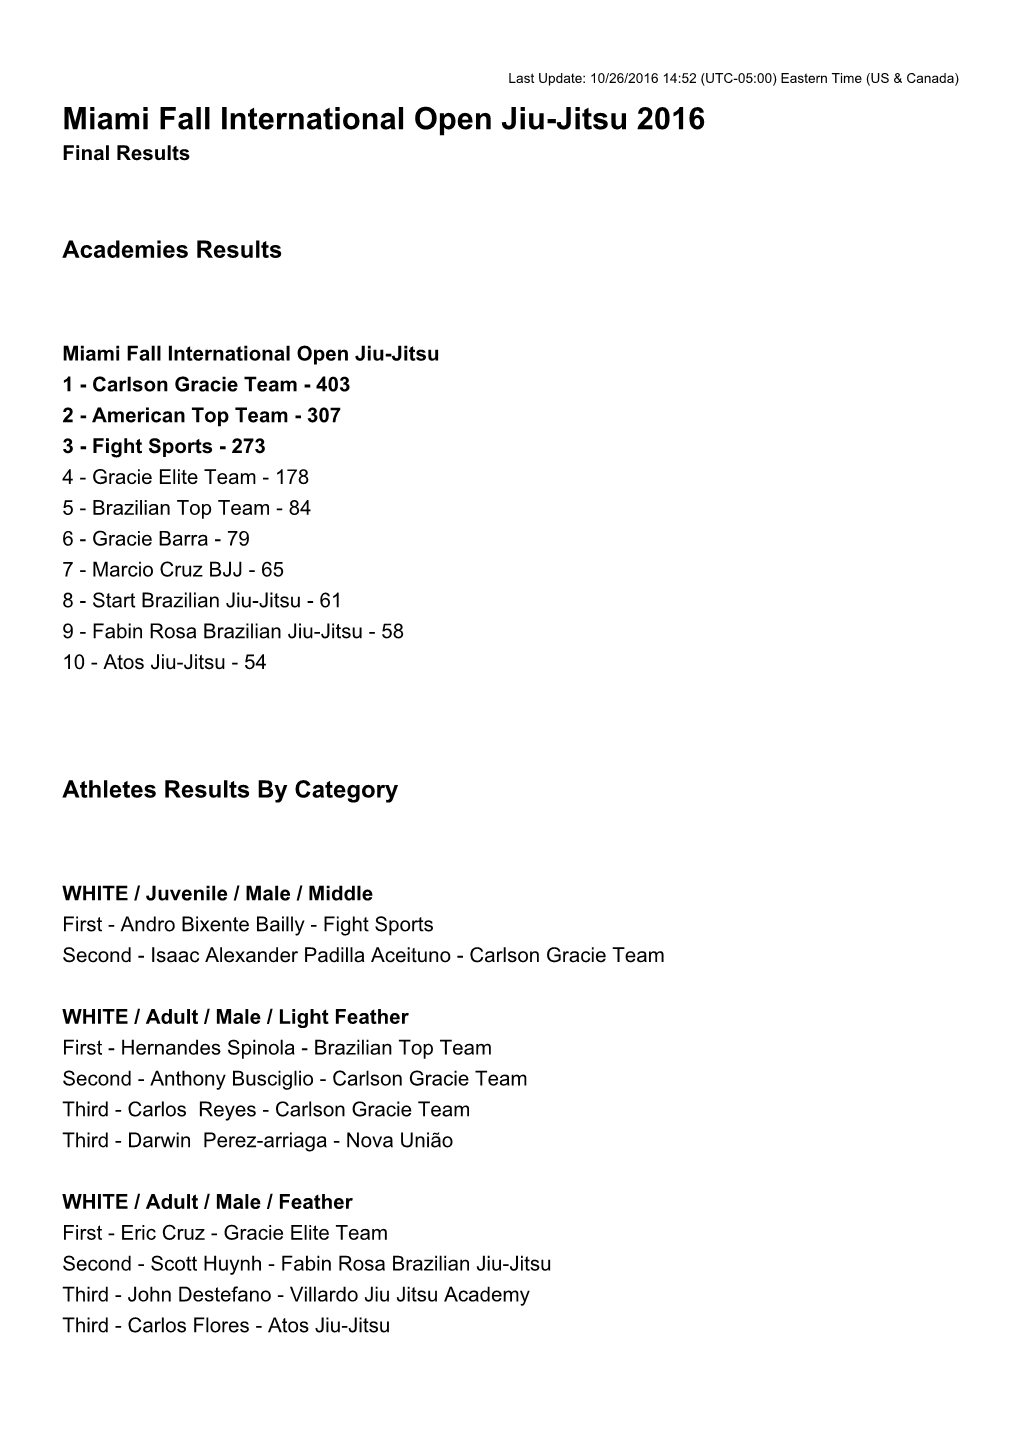 Miami Fall International Open Jiu-Jitsu 2016 Final Results